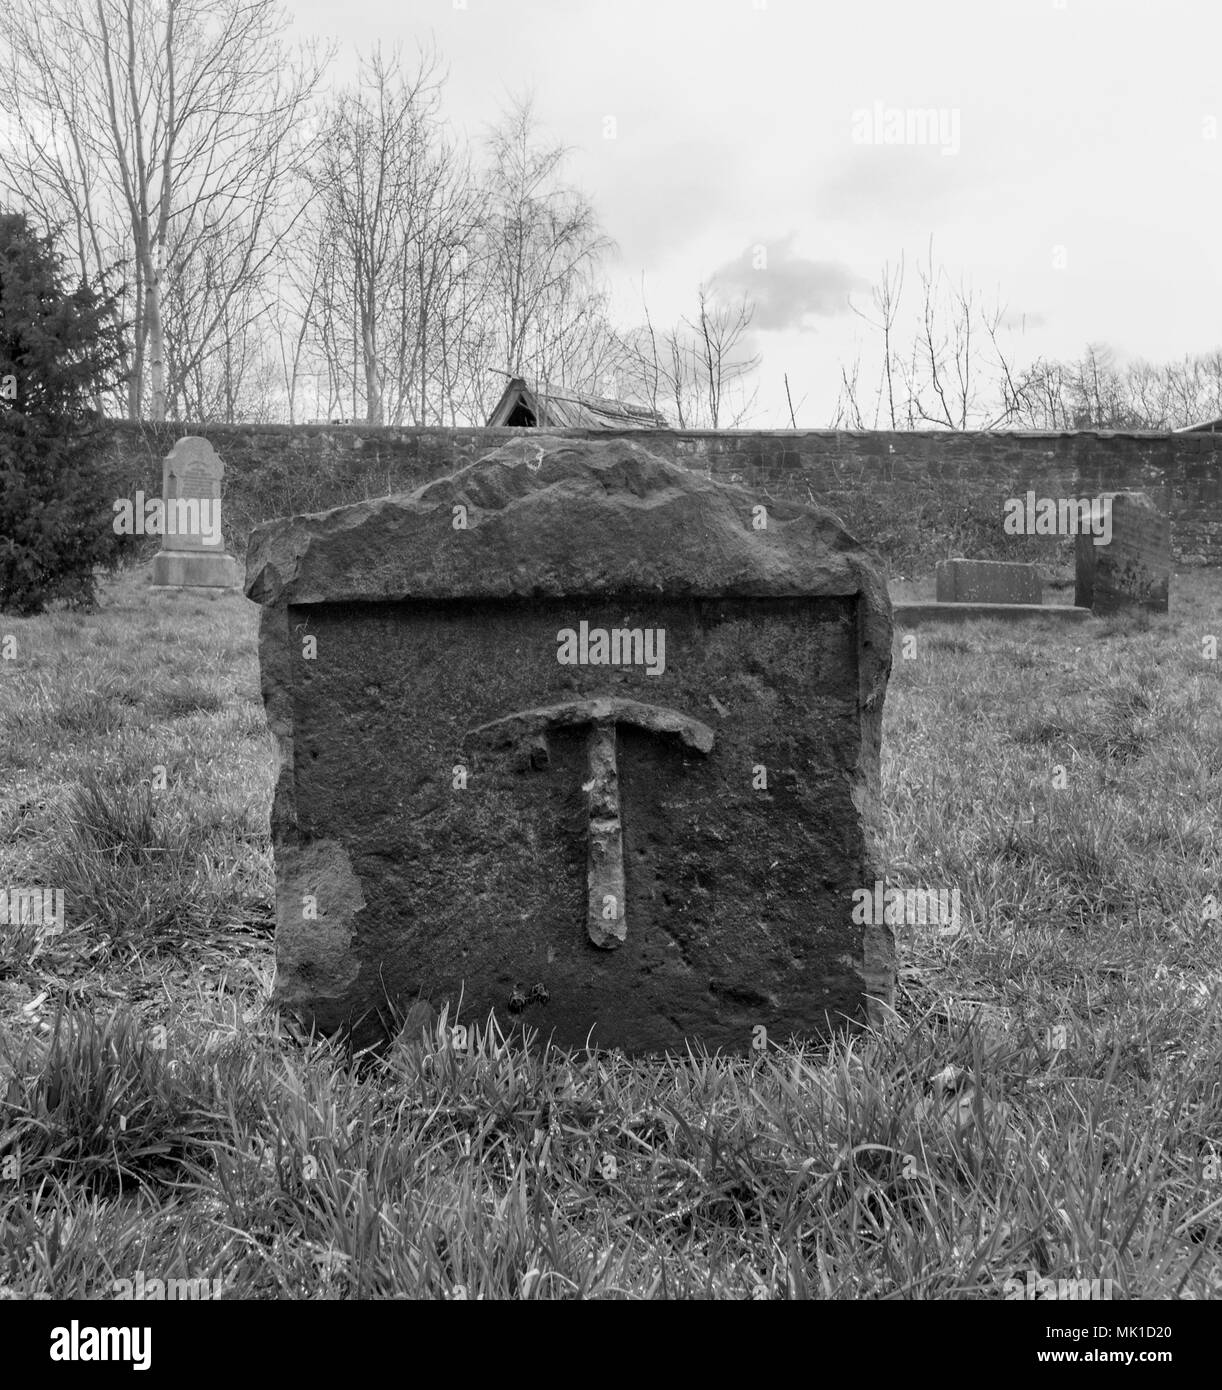 GLASGOW, SCOZIA - 27 Marzo 2018: una fotografia in bianco e nero di un piccone su una lastra tombale al Govan vecchia chiesa parrocchiale. Foto Stock